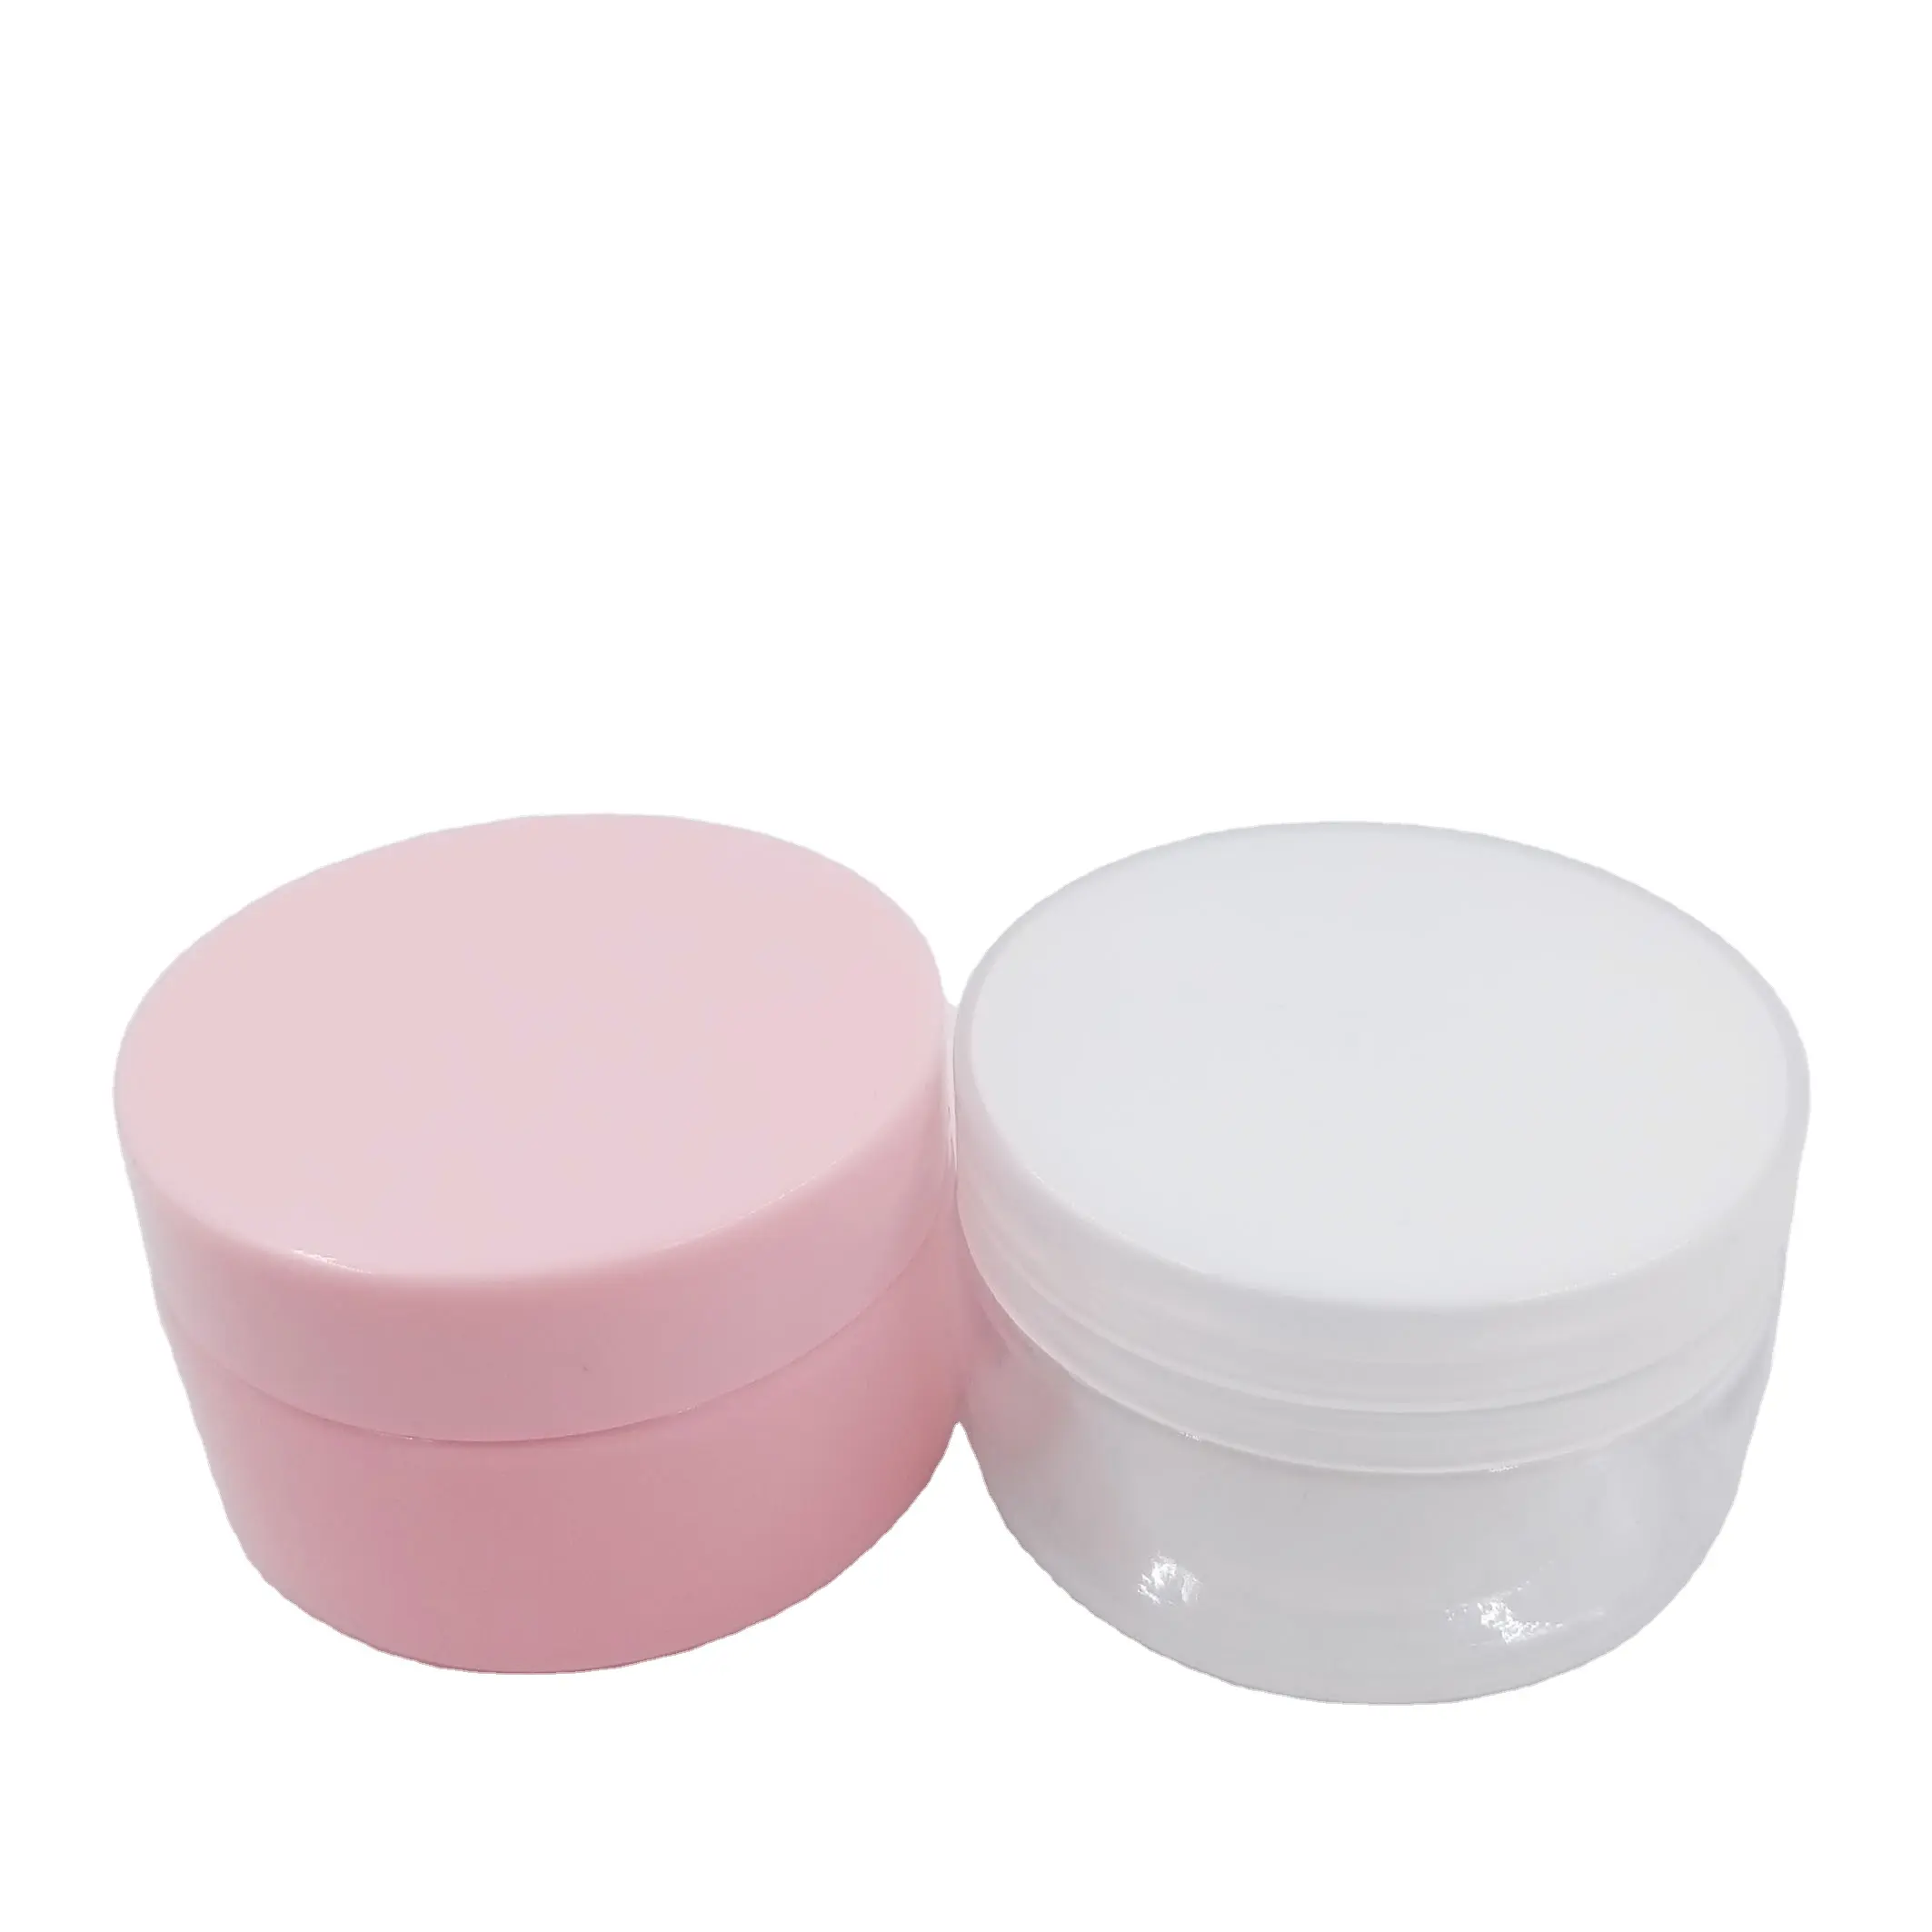 200 Gr Gloss Pink/Transparent Mặt Kem Chum Rỗng Mỹ Phẩm Kem Jar Màu Hồng Kem Jar Mỹ Phẩm Container Và Bao Bì